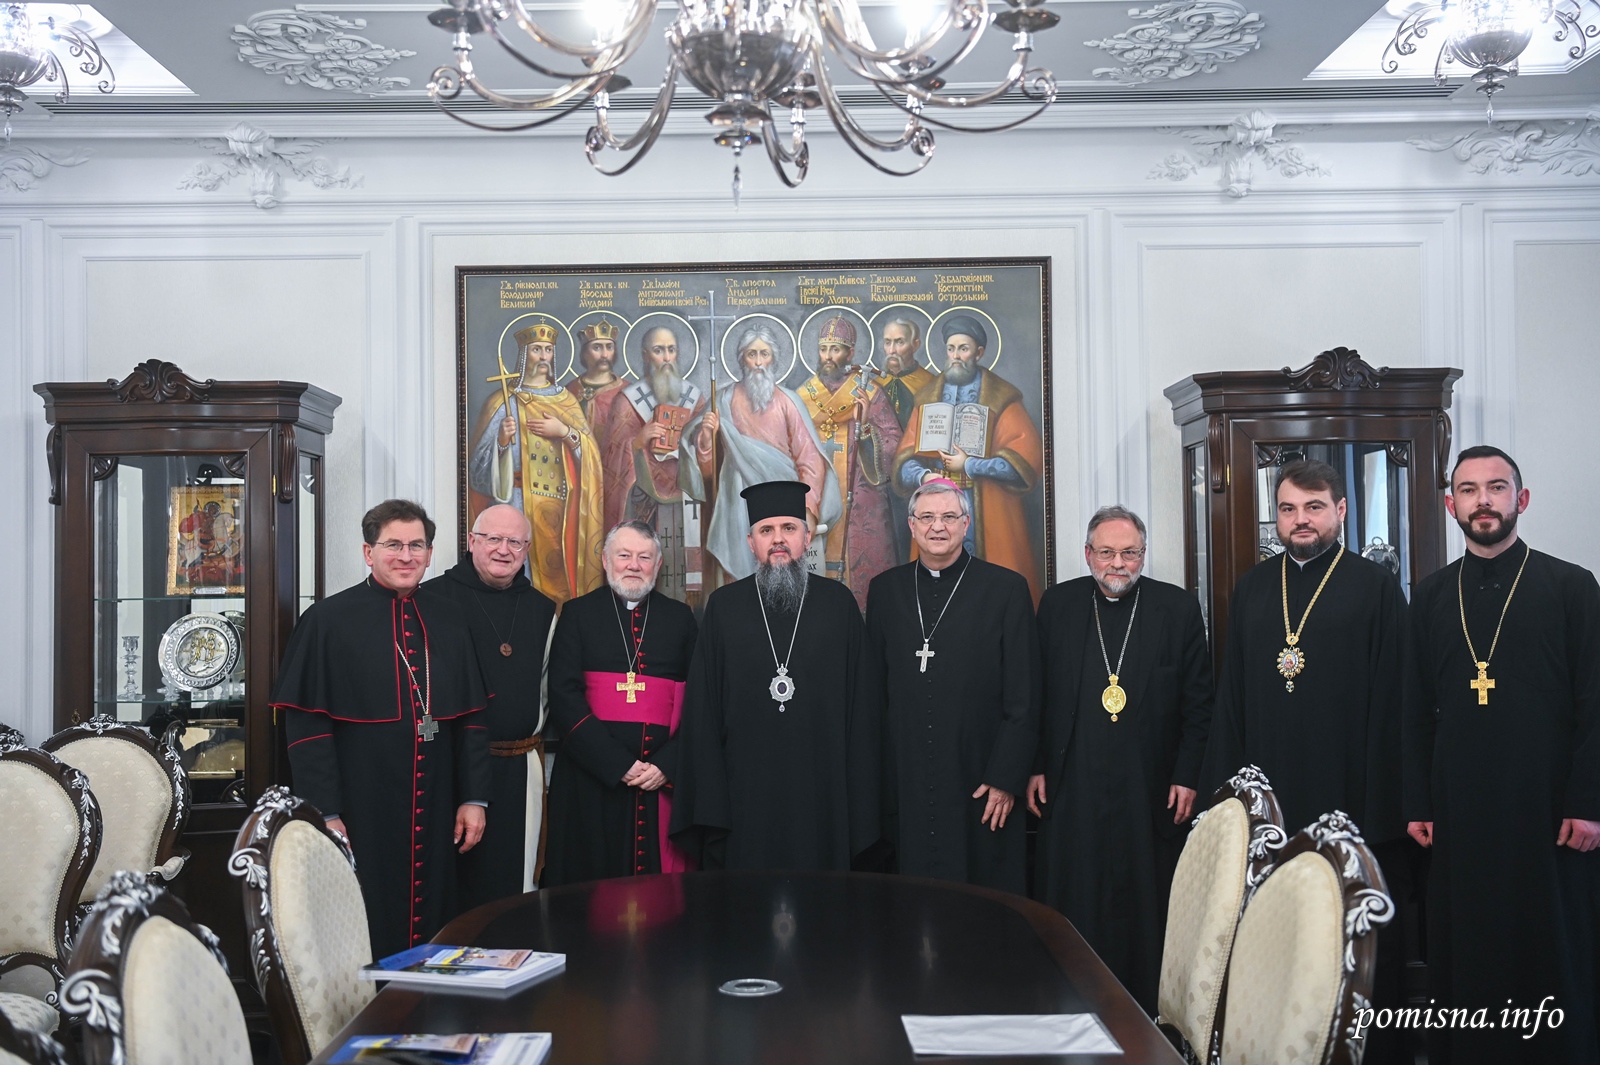 Η OCU και το Βατικανό αναπτύσσουν σχέσεις: γιατί; фото 4